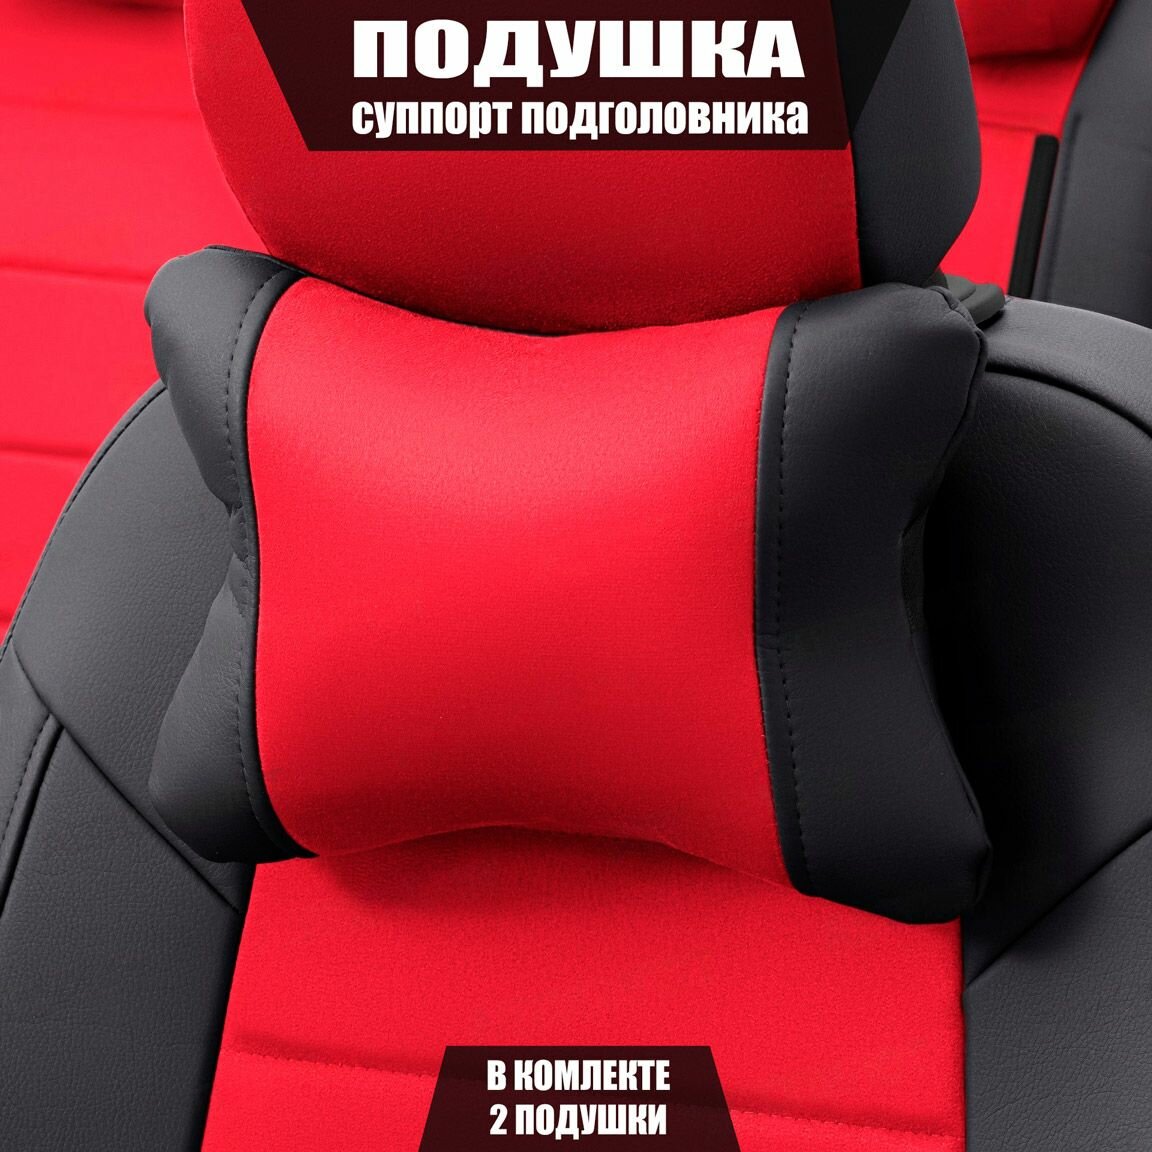 Подушки под шею (суппорт подголовника) для БМВ 1 серии (2007 - 2011) купе / BMW 1-series, Алькантара, 2 подушки, Черный и красный